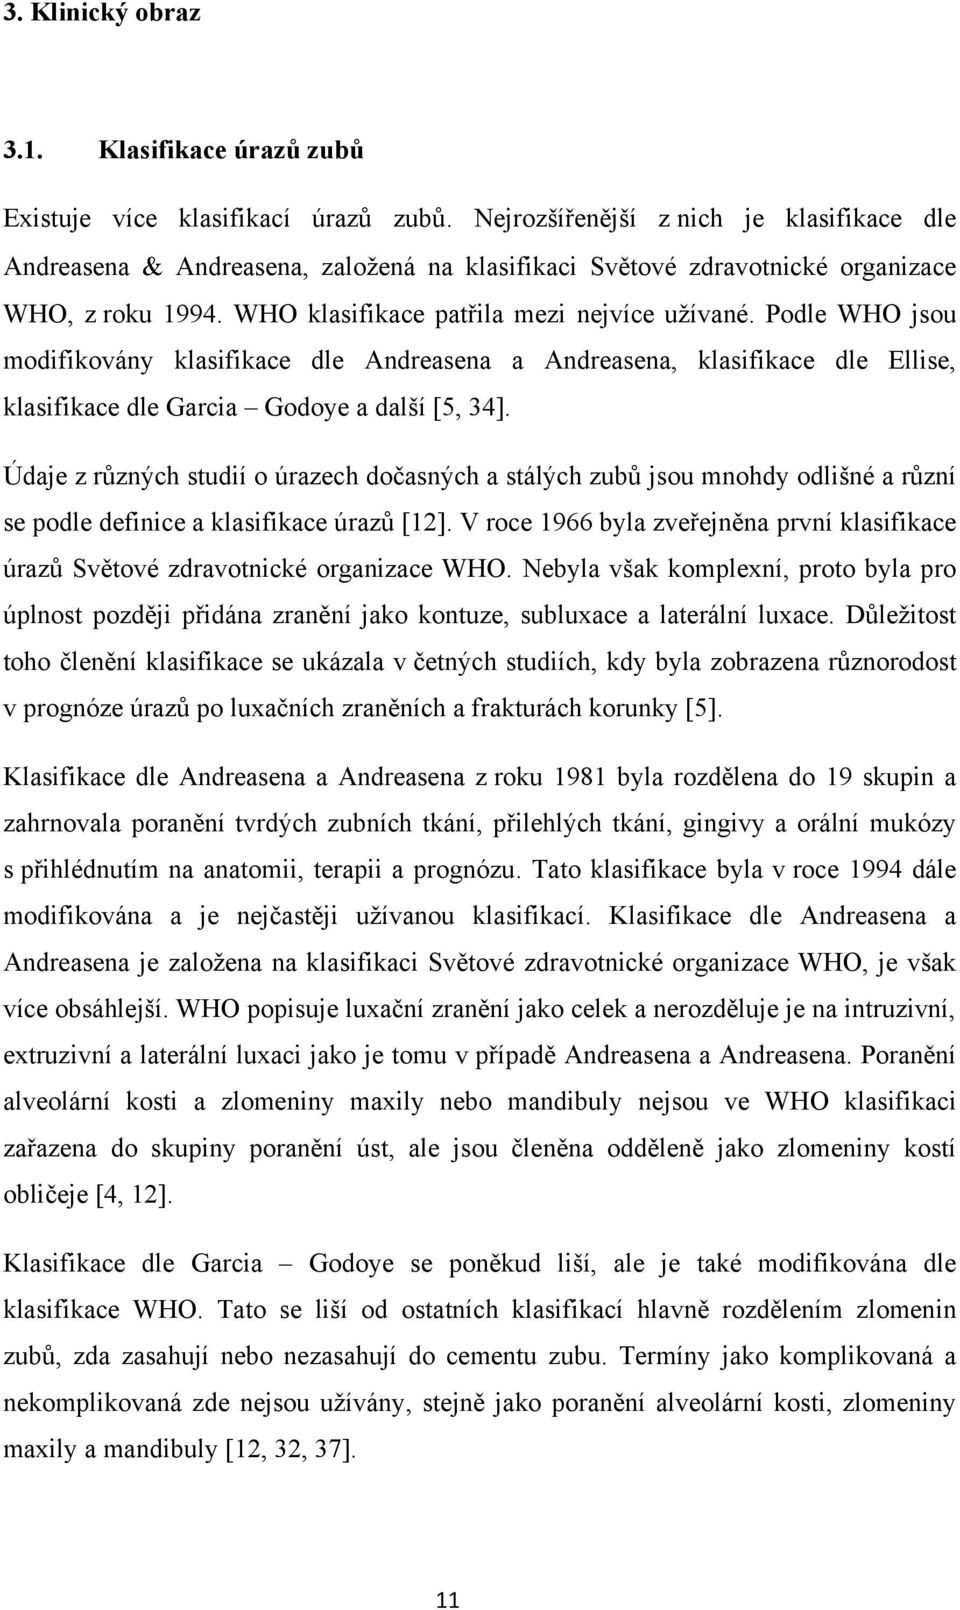 Podle WHO jsou modifikovány klasifikace dle Andreasena a Andreasena, klasifikace dle Ellise, klasifikace dle Garcia Godoye a další [5, 34].